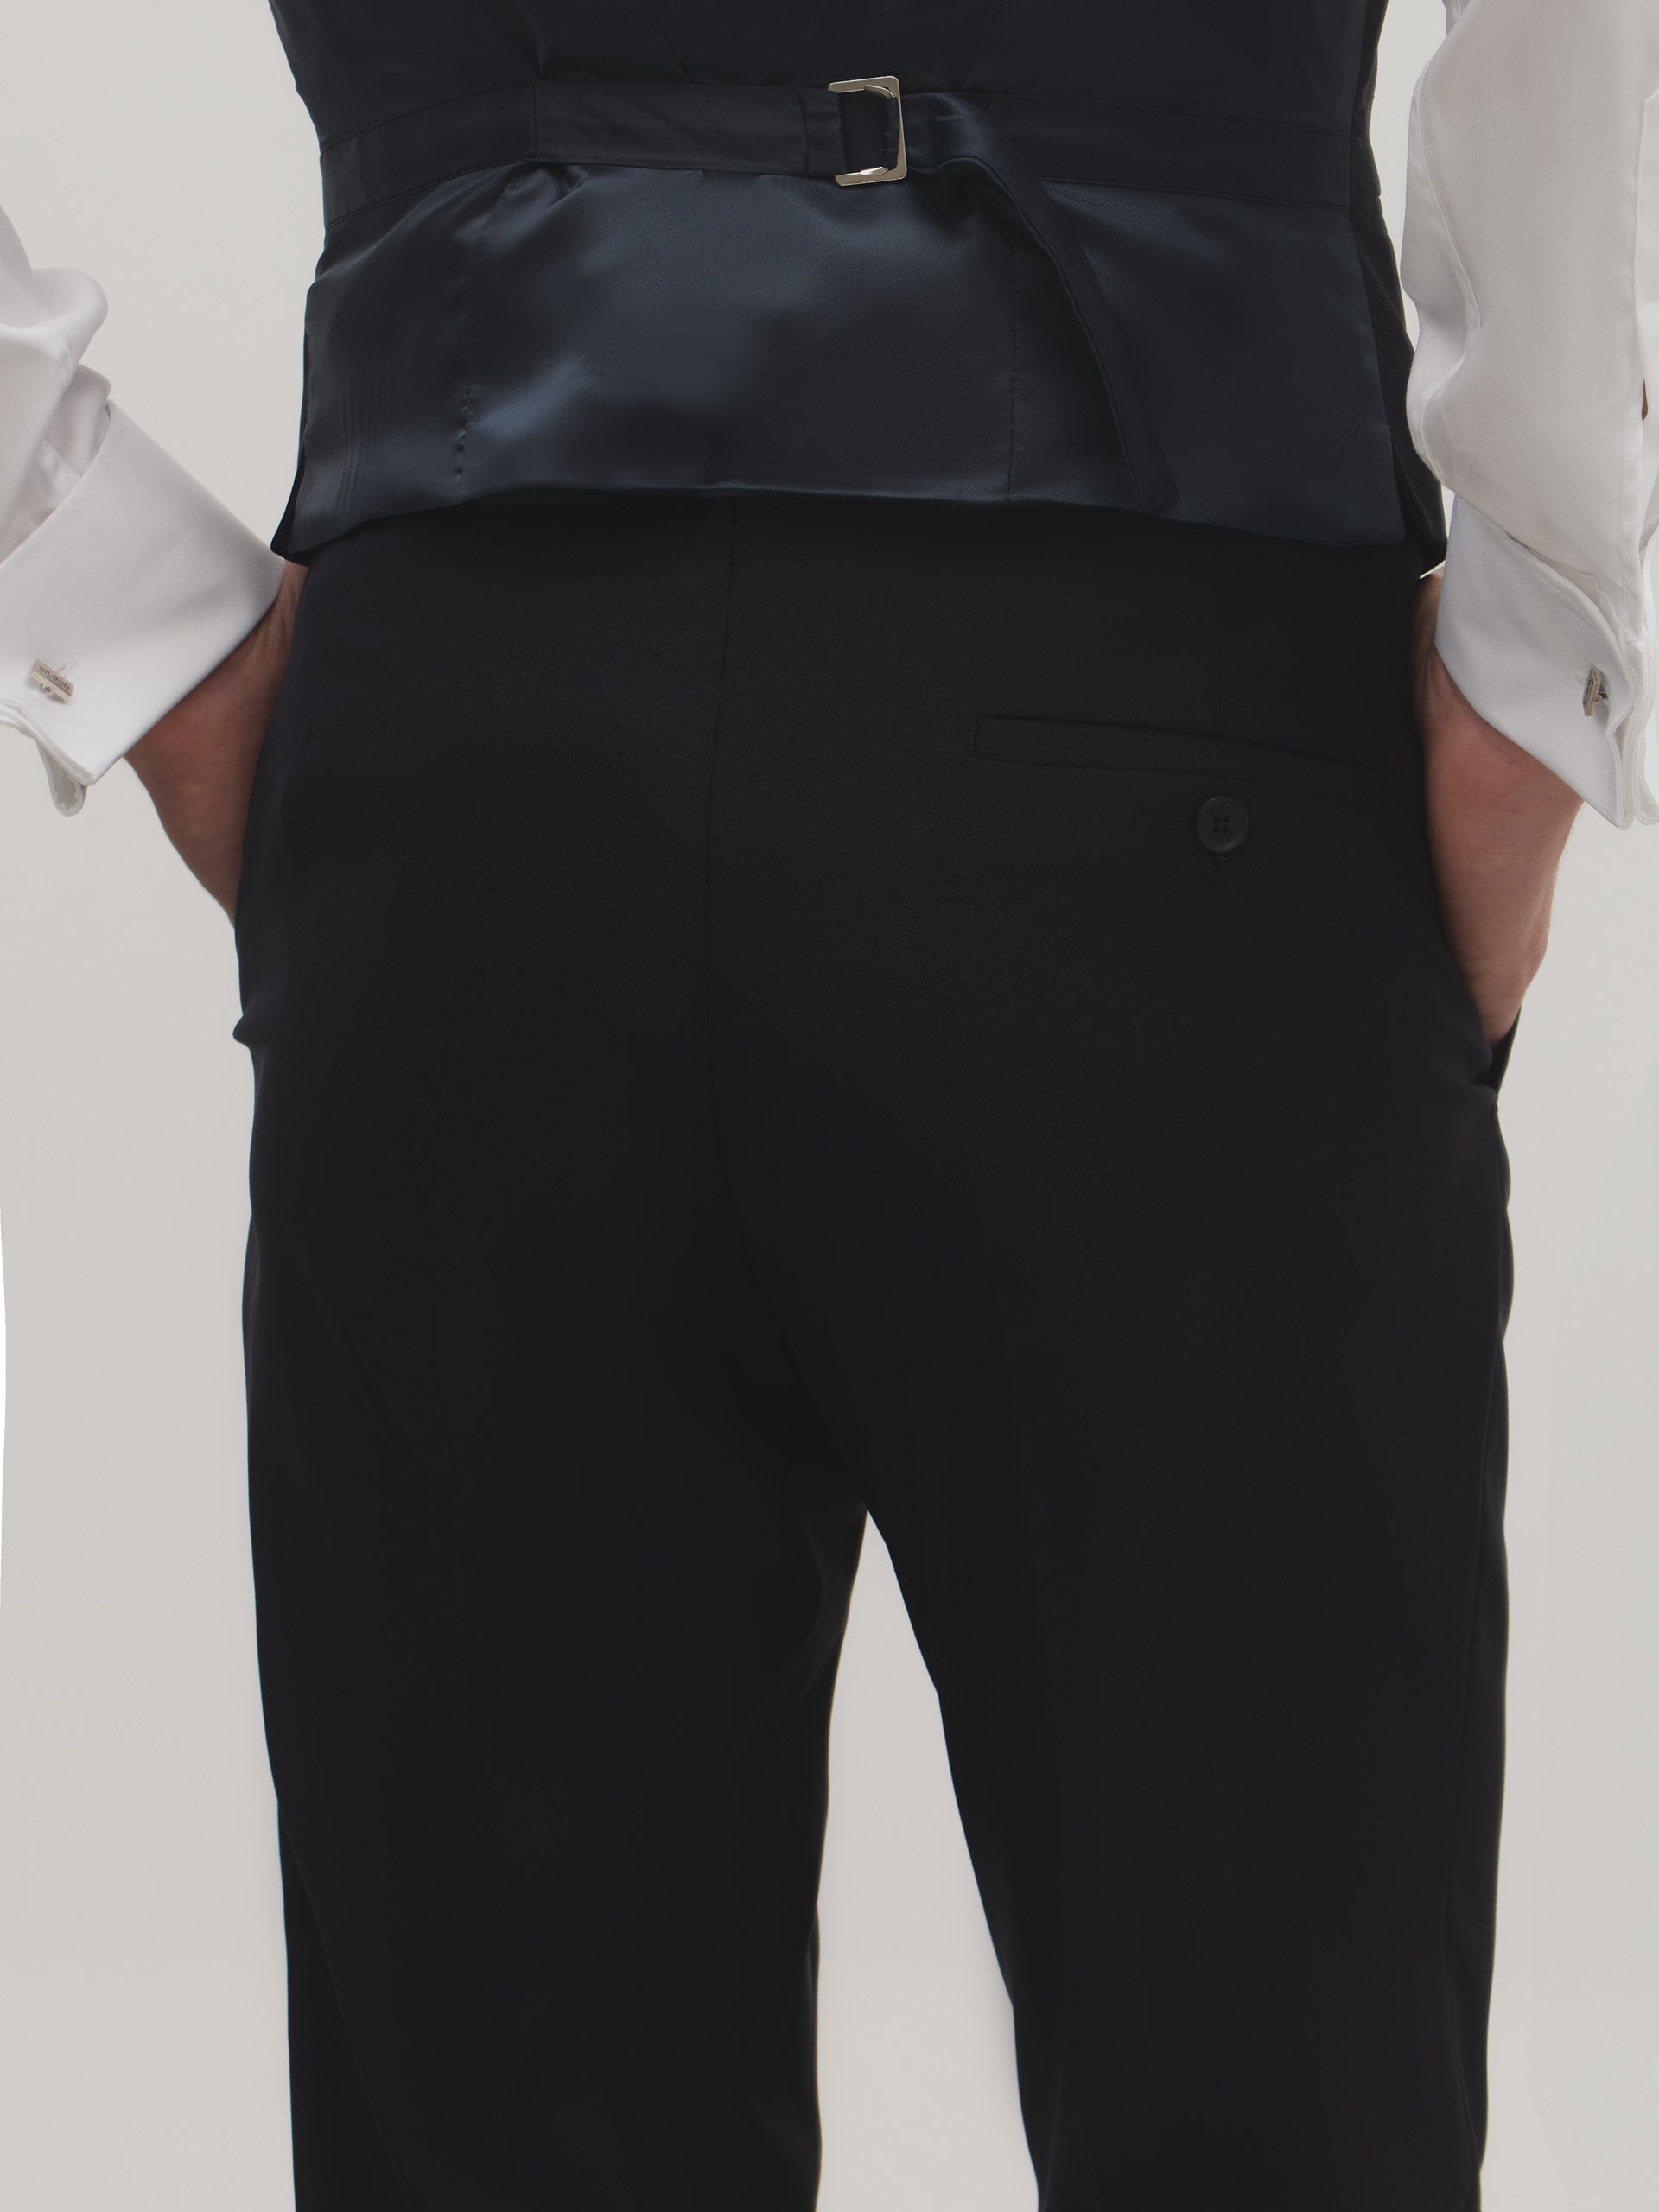 Pantalon veste stretch bleu marine